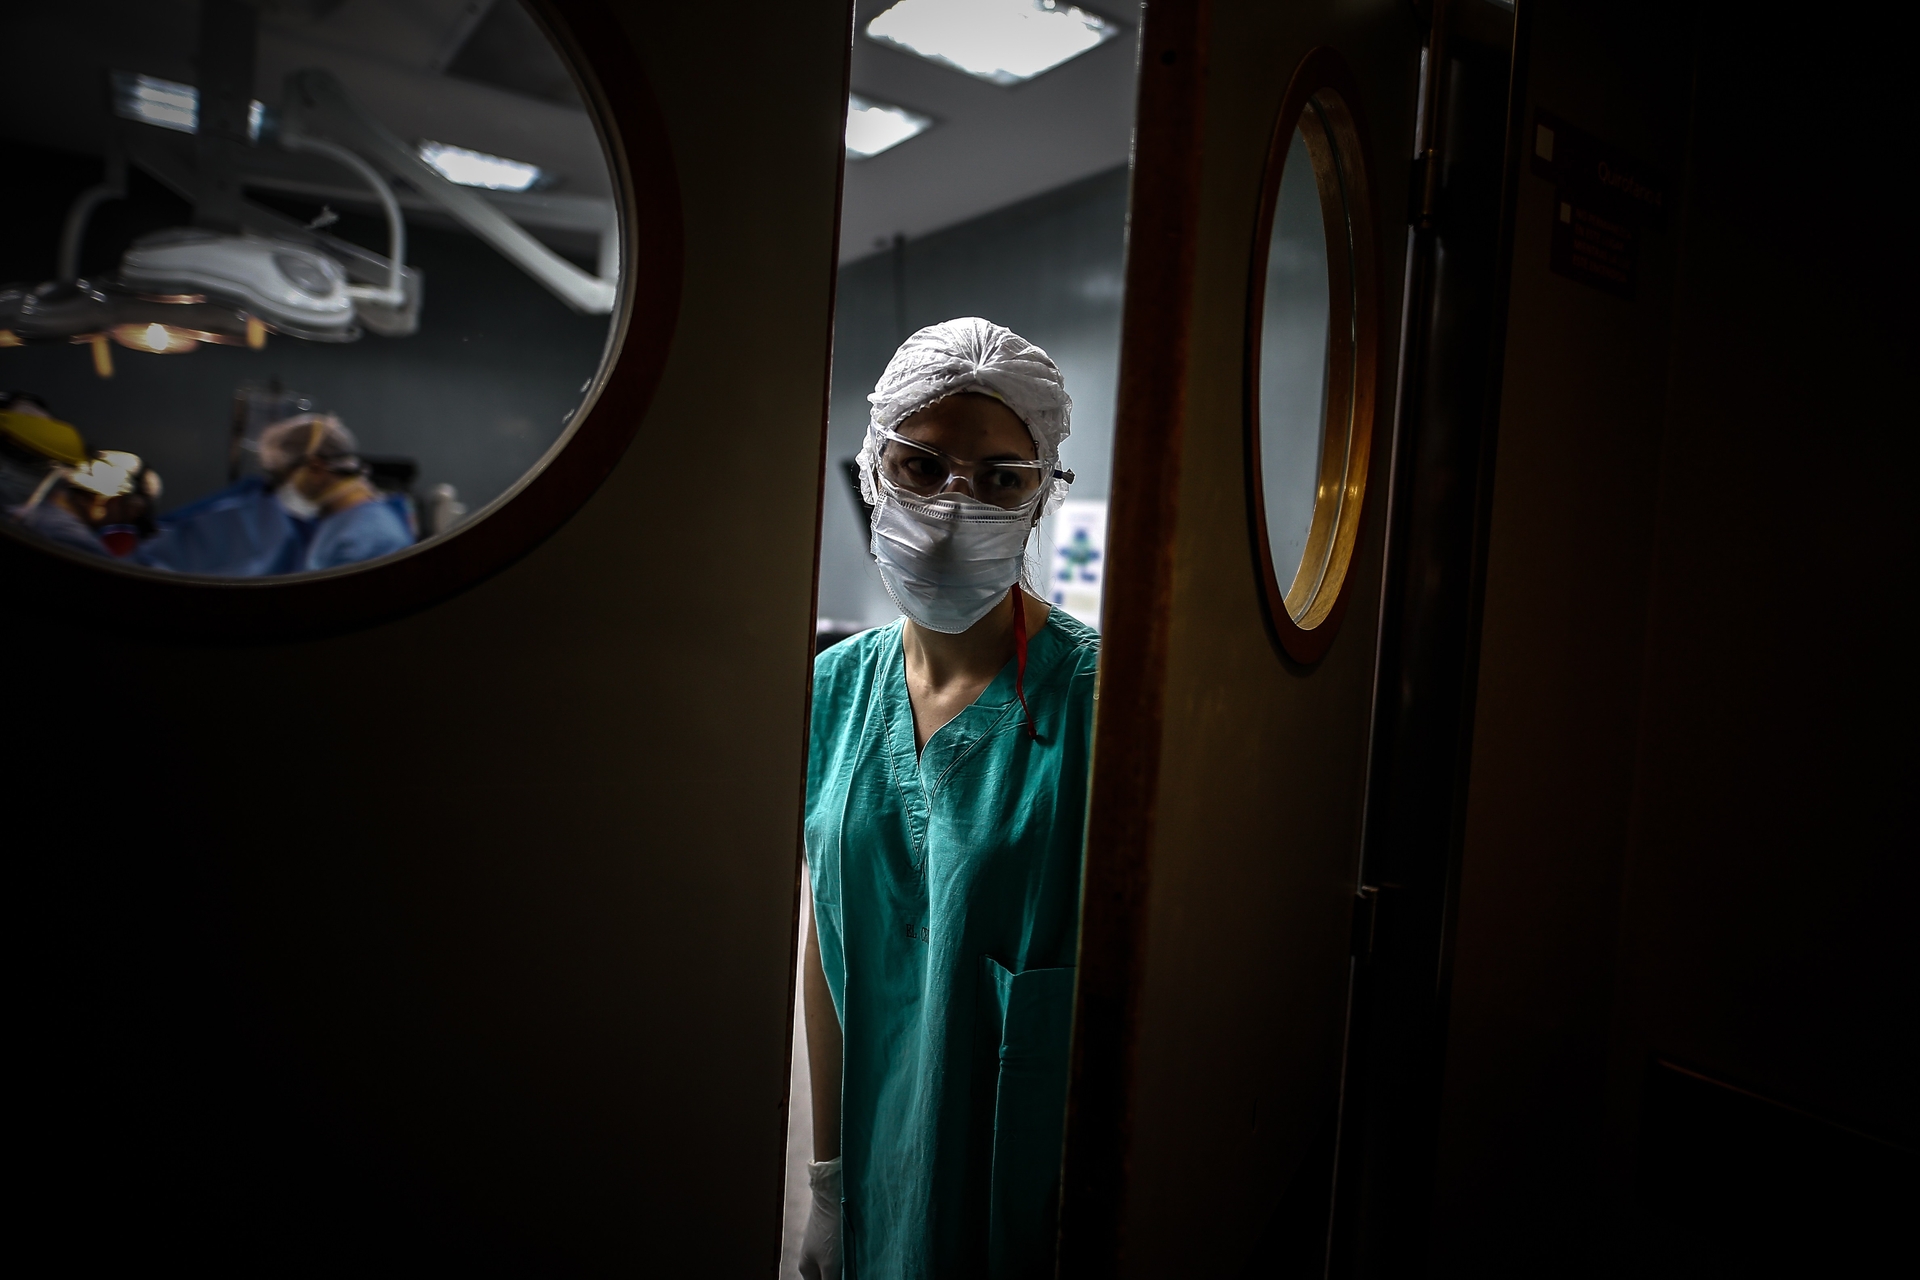 Afbeelding van 1 op de 3 vrouwelijke chirurgen in VK wordt aangerand op het werk, zelfs tijdens operaties